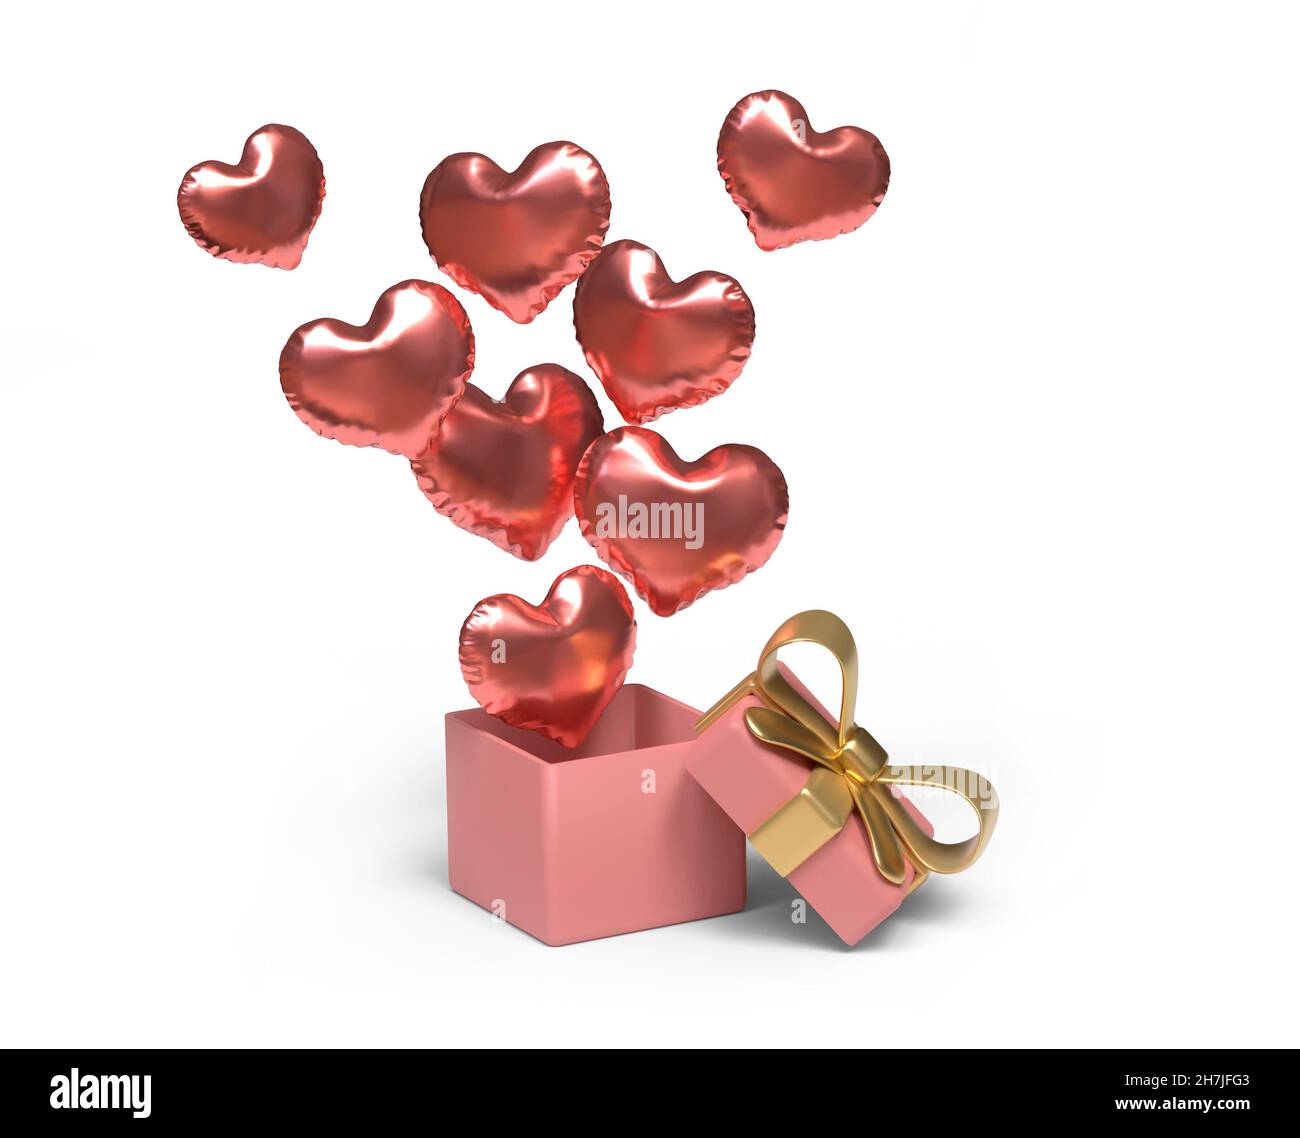 Boîte cadeau ouverte avec ballons en forme de coeur.Masque.Image 3D Banque D'Images